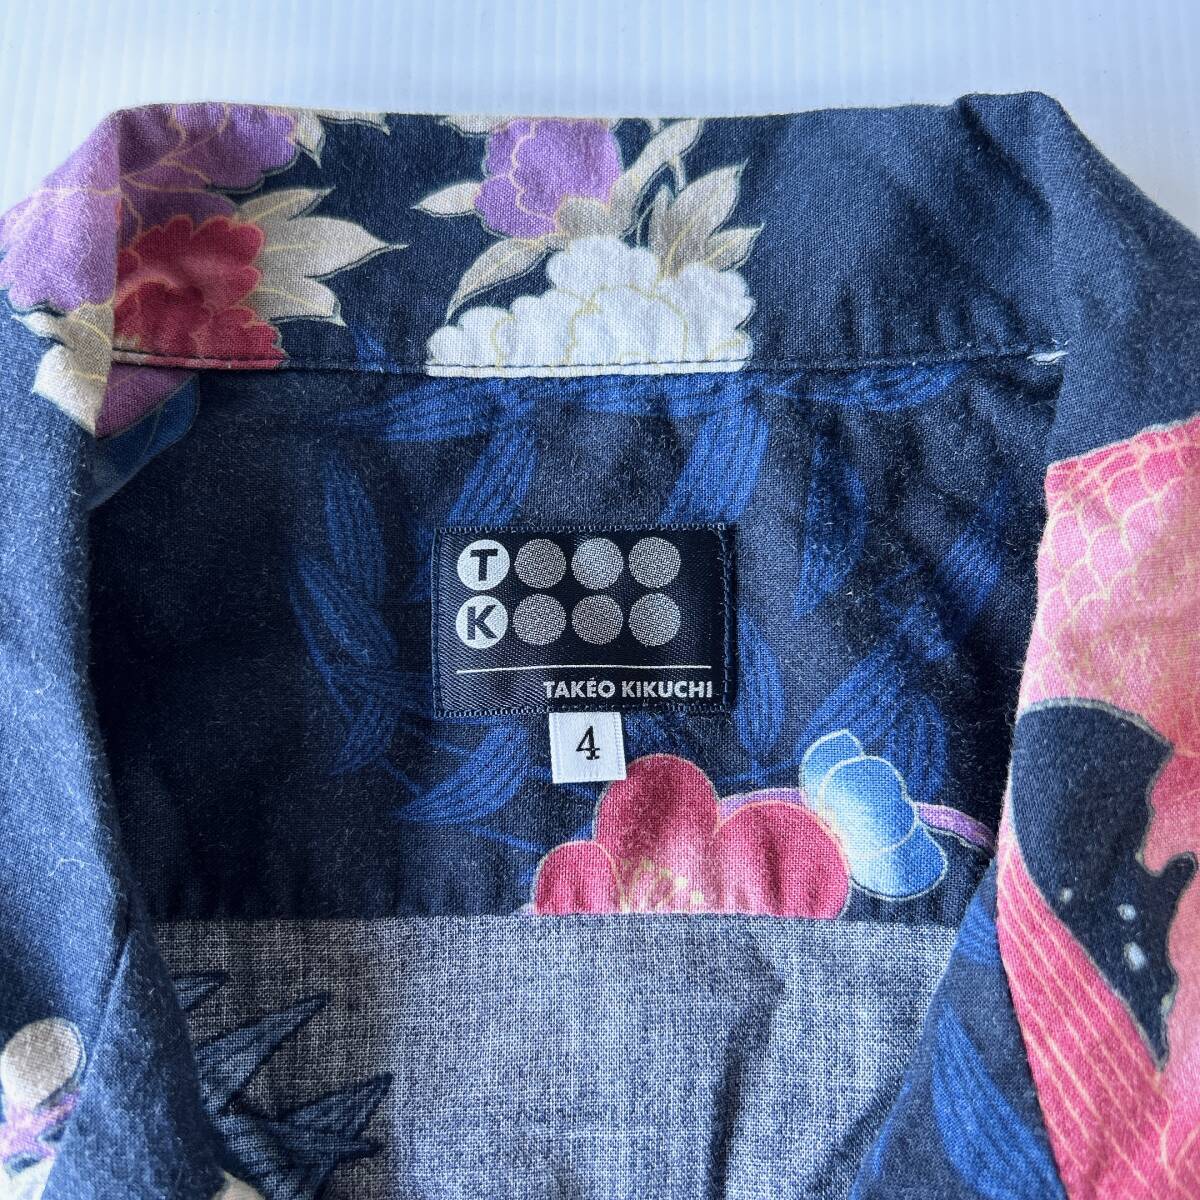 1 jpy start secondhand goods aloha shirt shirt Takeo Kikuchi size 4 TAKEO KIKUCHI SIZE 4 crane flower navy blue blue blue navy 